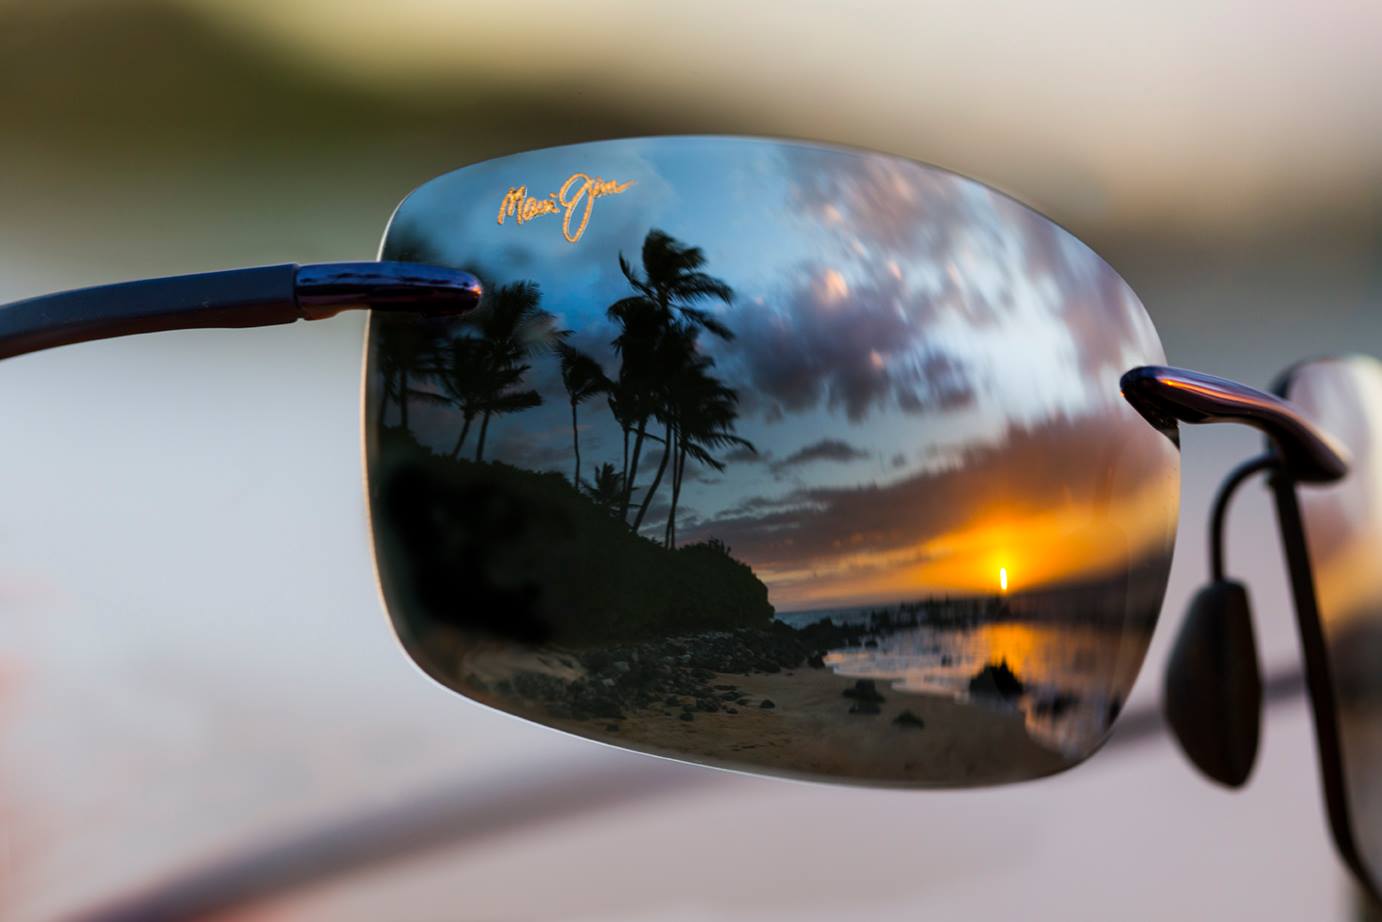 Maui Jim Bifocal Reader Sunglasses, The Ultimate Guide